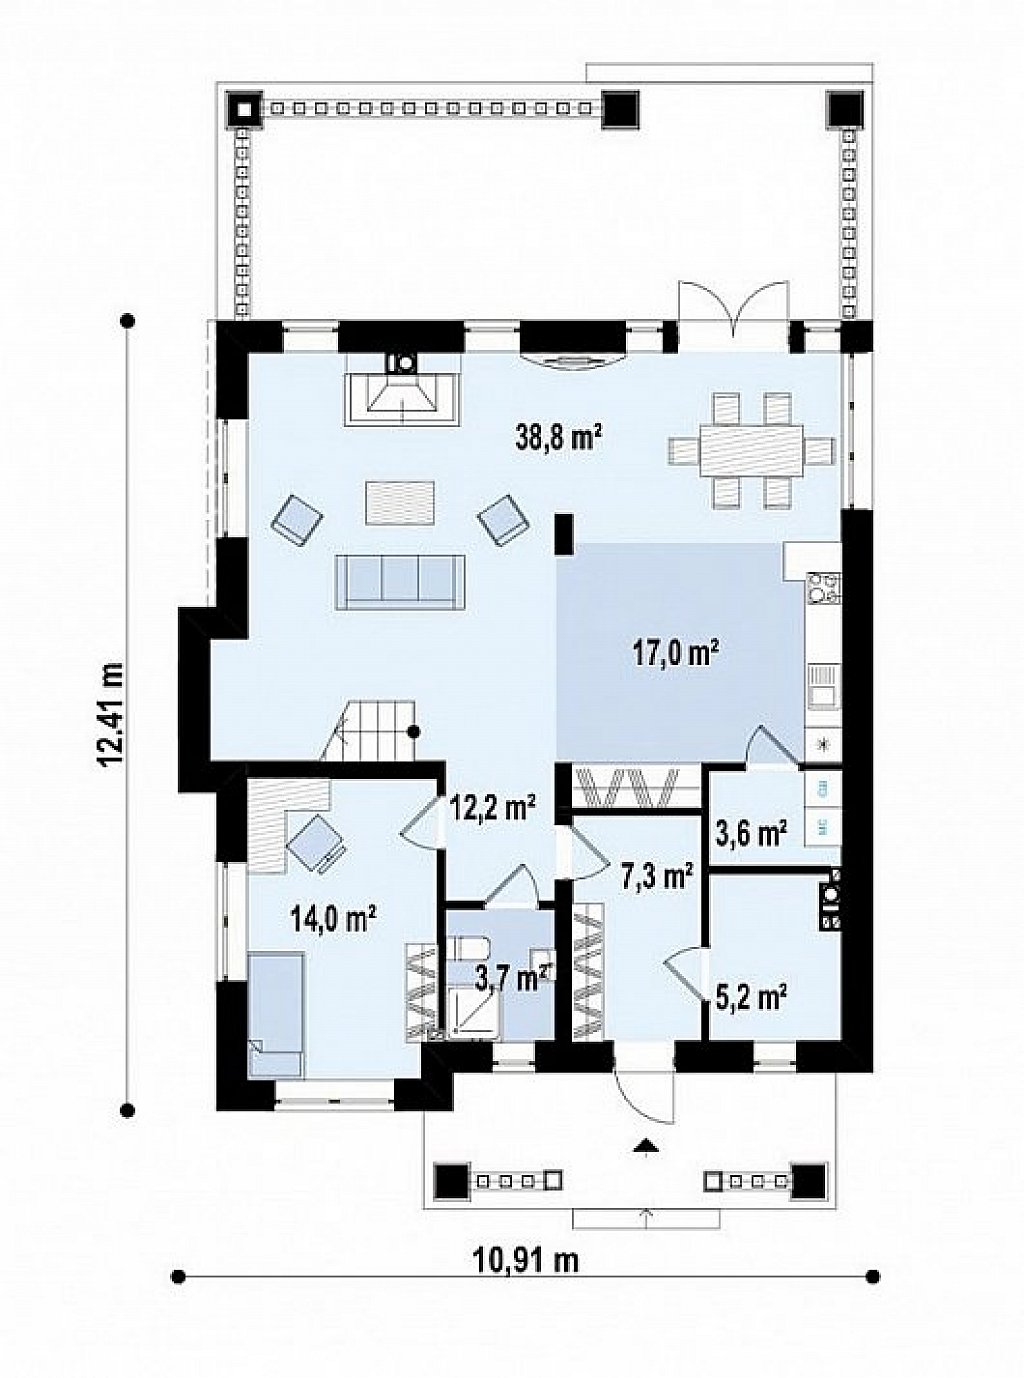 вариант двухэтажного дома Zz2 L BG в классическом стиле с плитами перекрытия план помещений 1